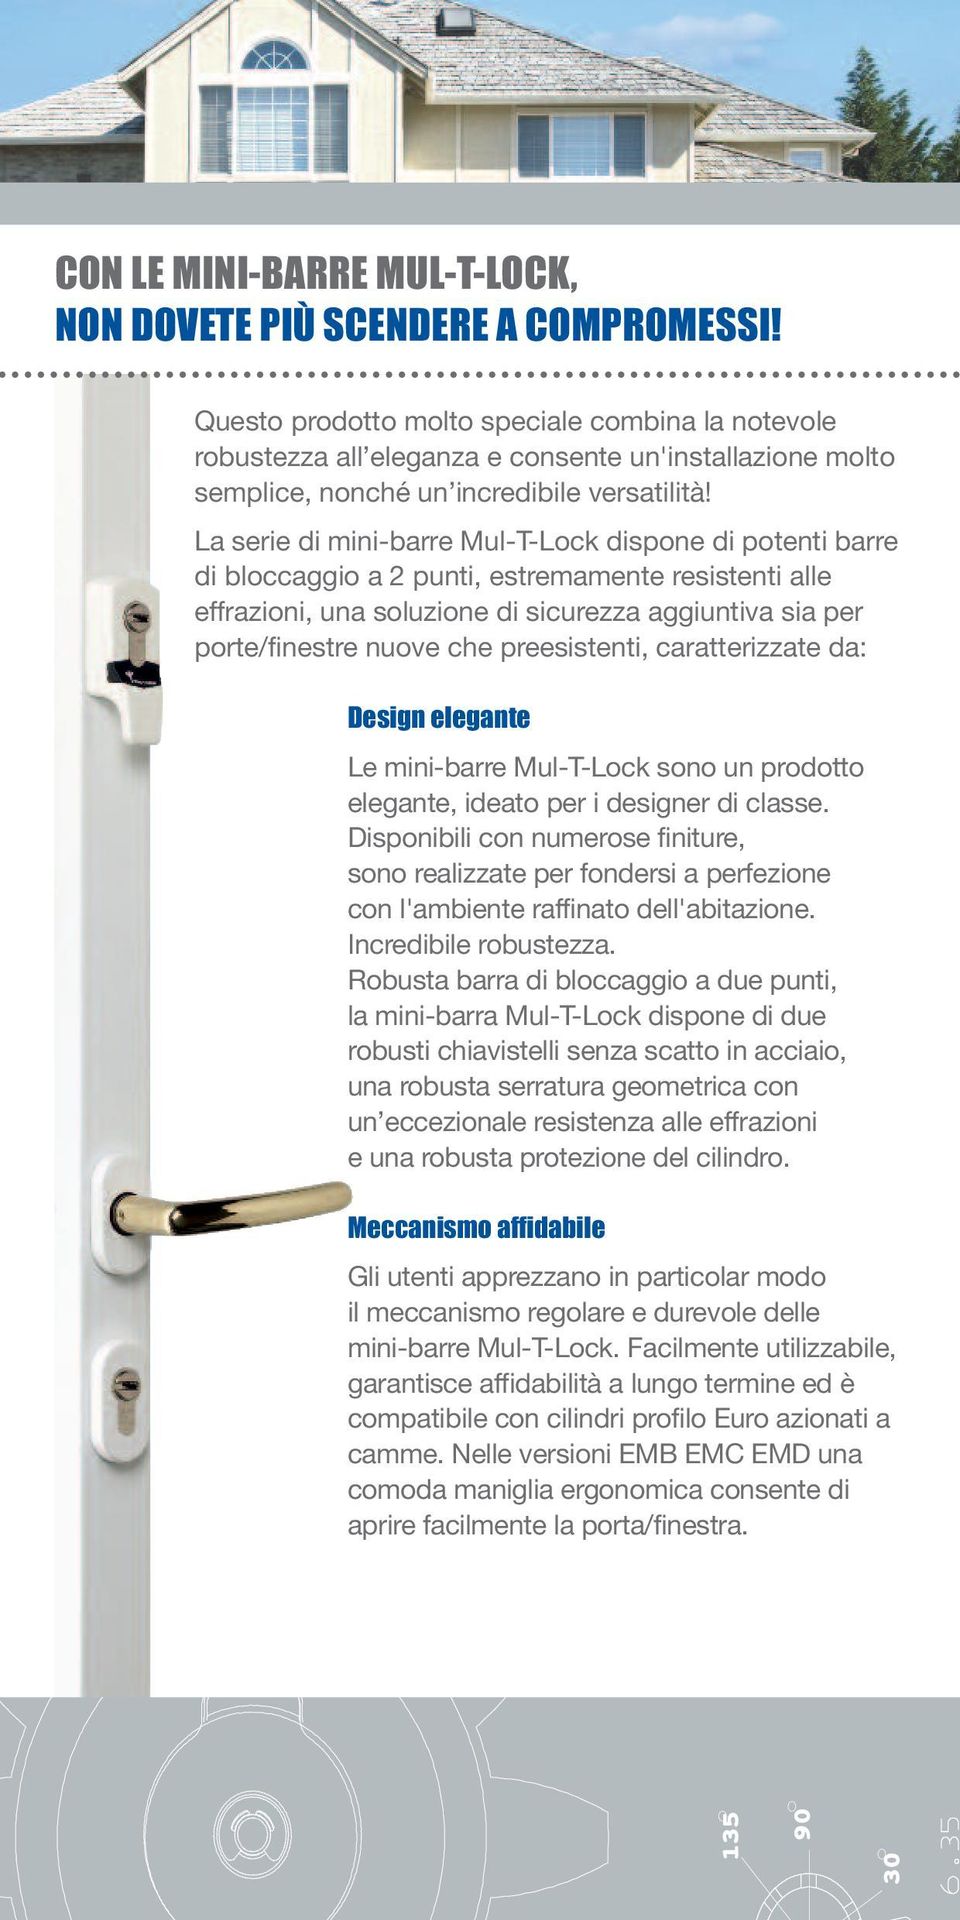 La serie di mini-barre Mul-T-Lock dispone di potenti barre di bloccaggio a 2 punti, estremamente resistenti alle effrazioni, una soluzione di sicurezza aggiuntiva sia per porte/finestre nuove che